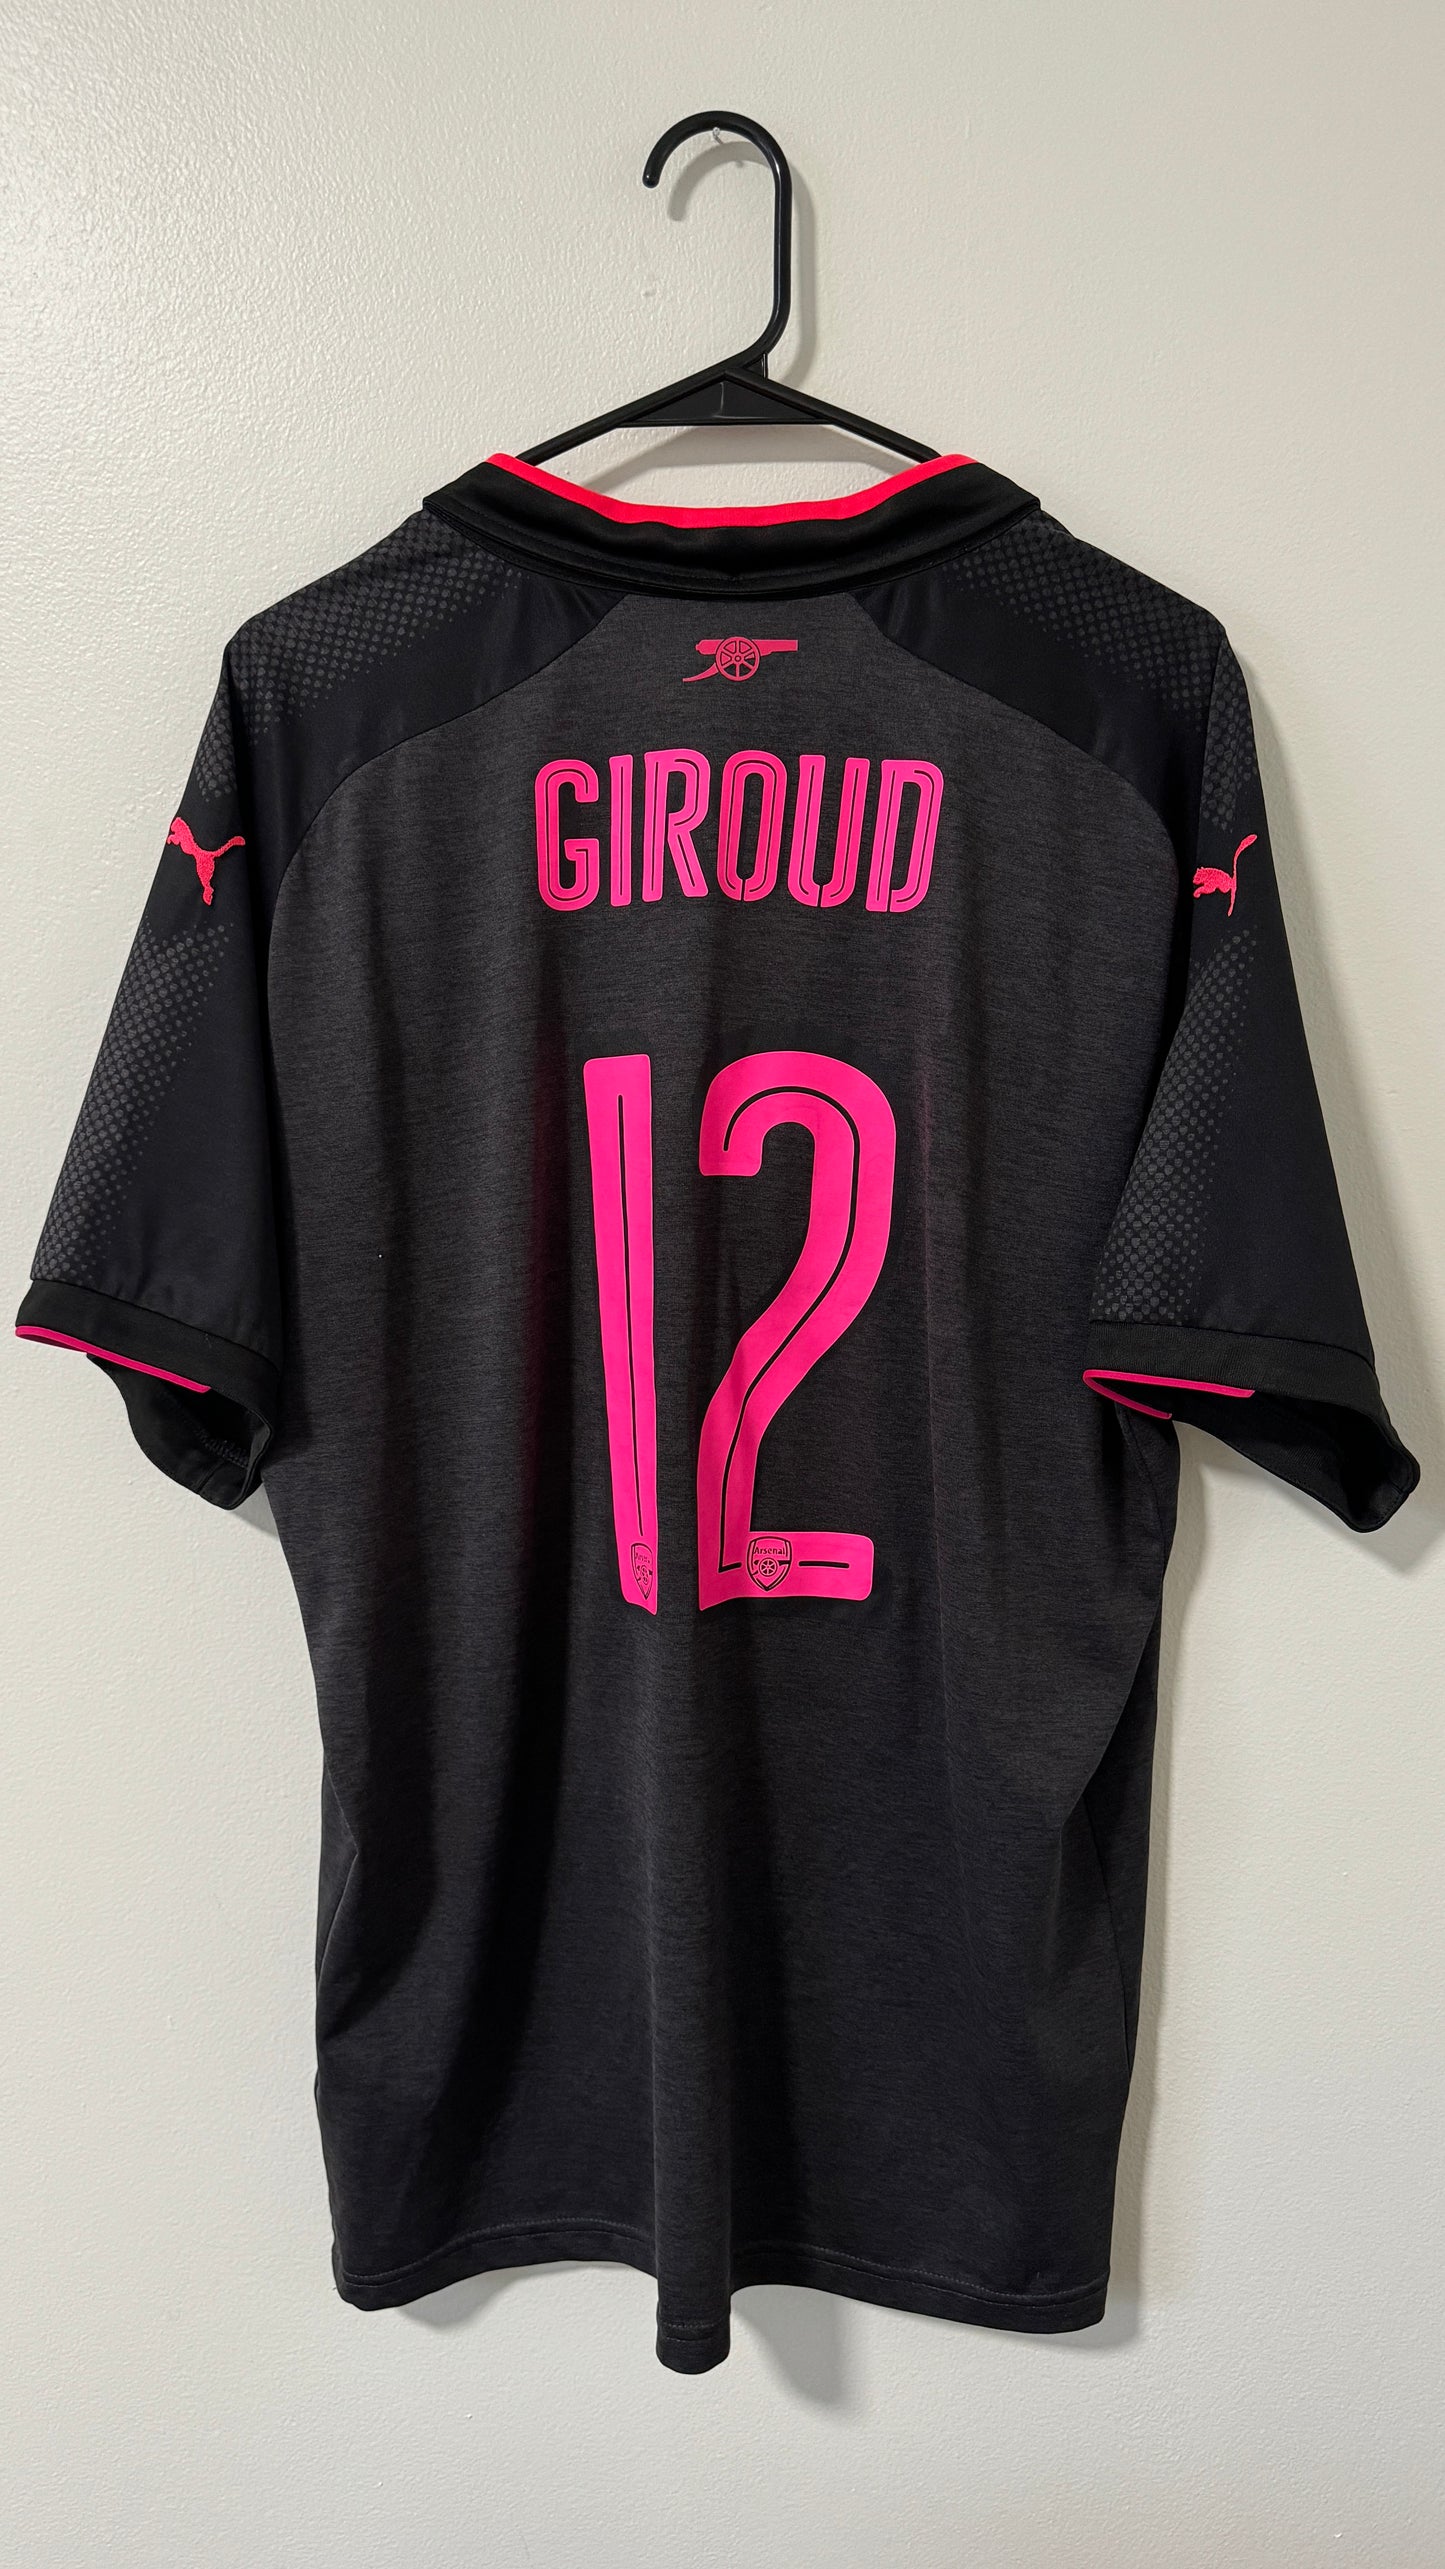 Arsenal Third 2017/18 Giroud #12